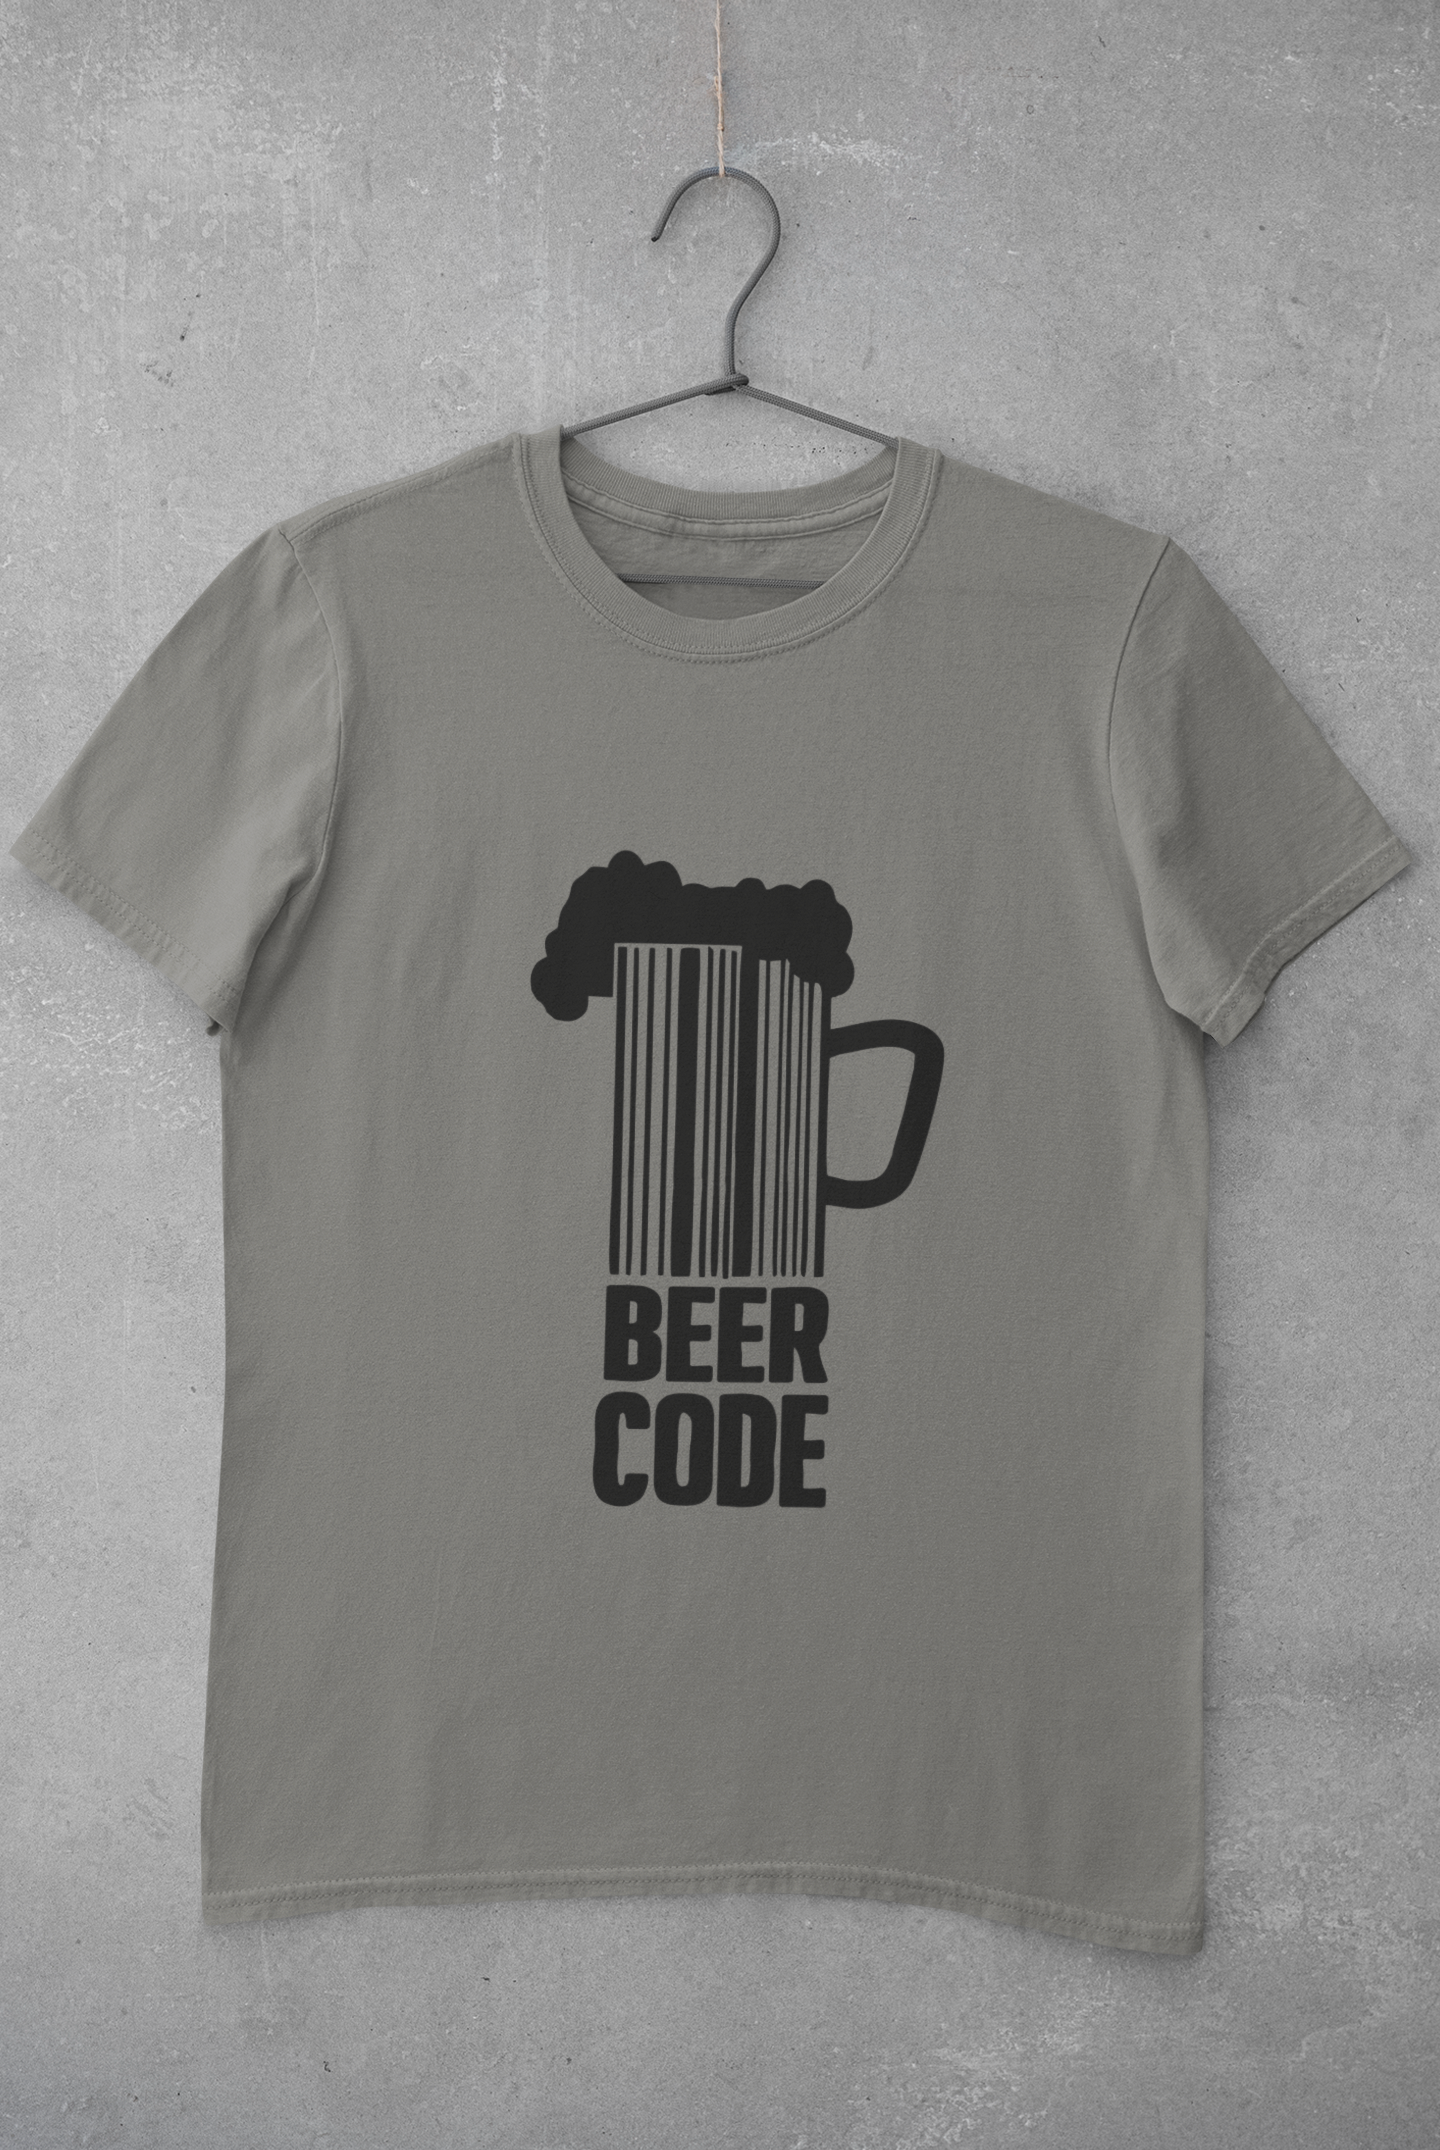 Beer Code Pub And Beer Women Half Sleeves T-shirt- FunkyTeesClub